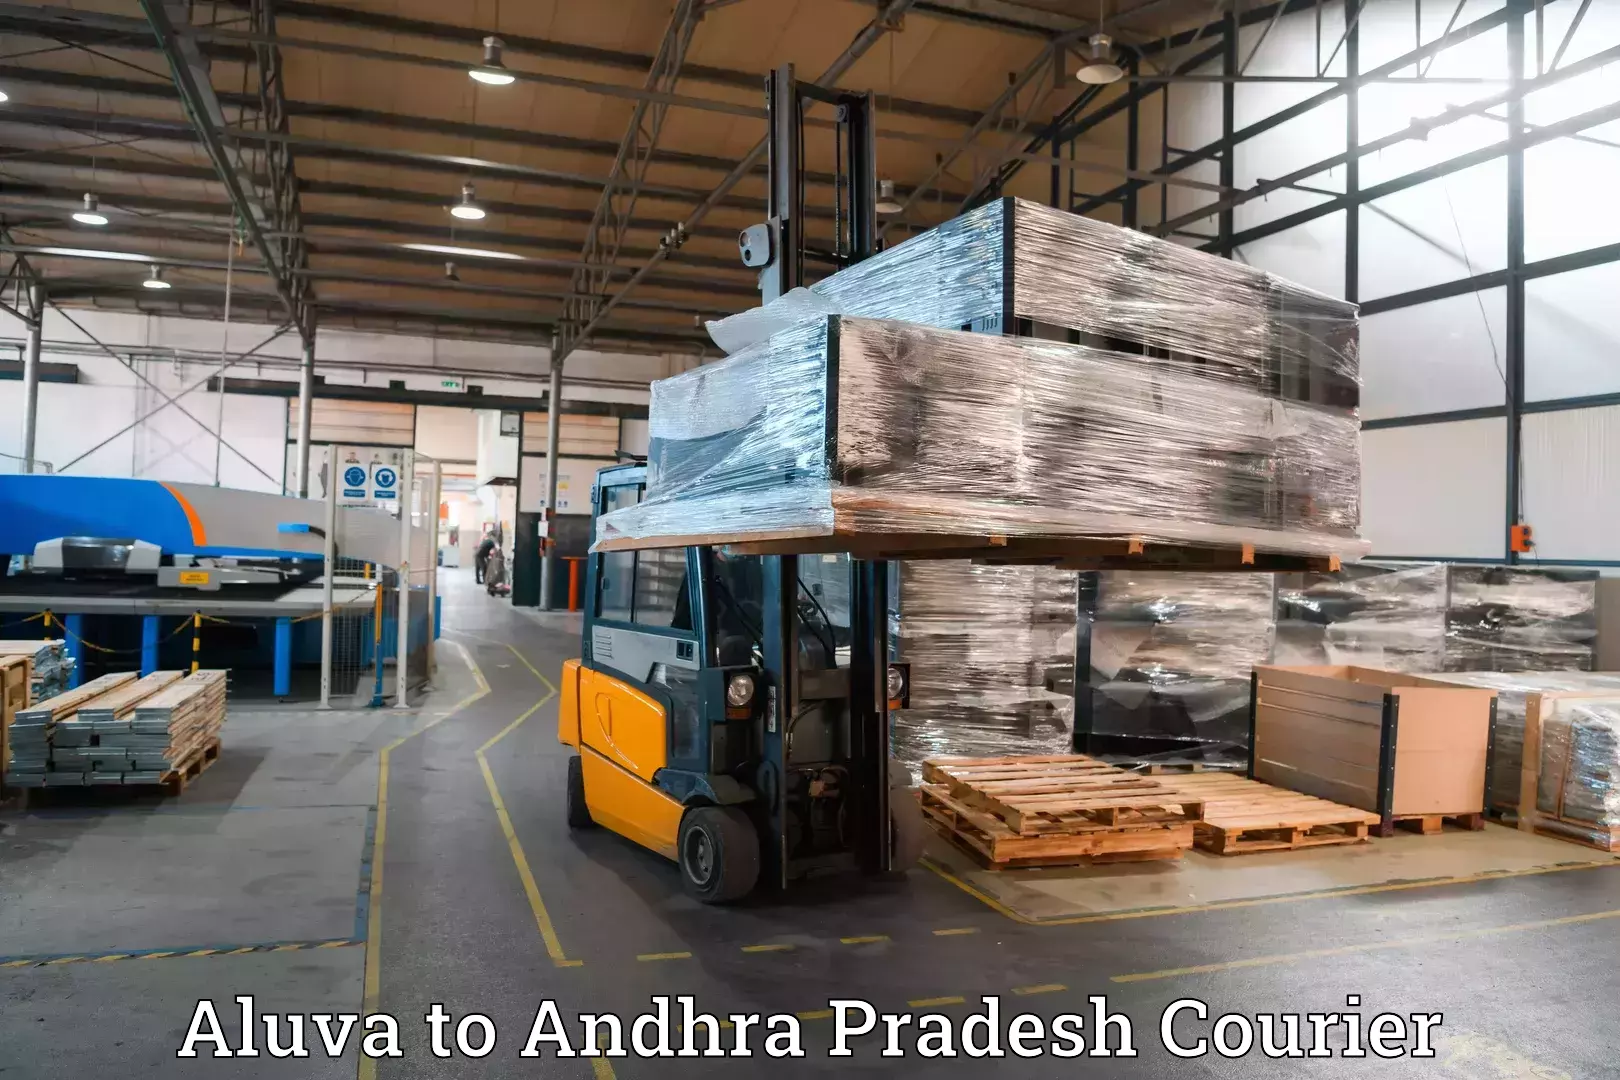 Luggage delivery calculator in Aluva to Puttur Tirupati